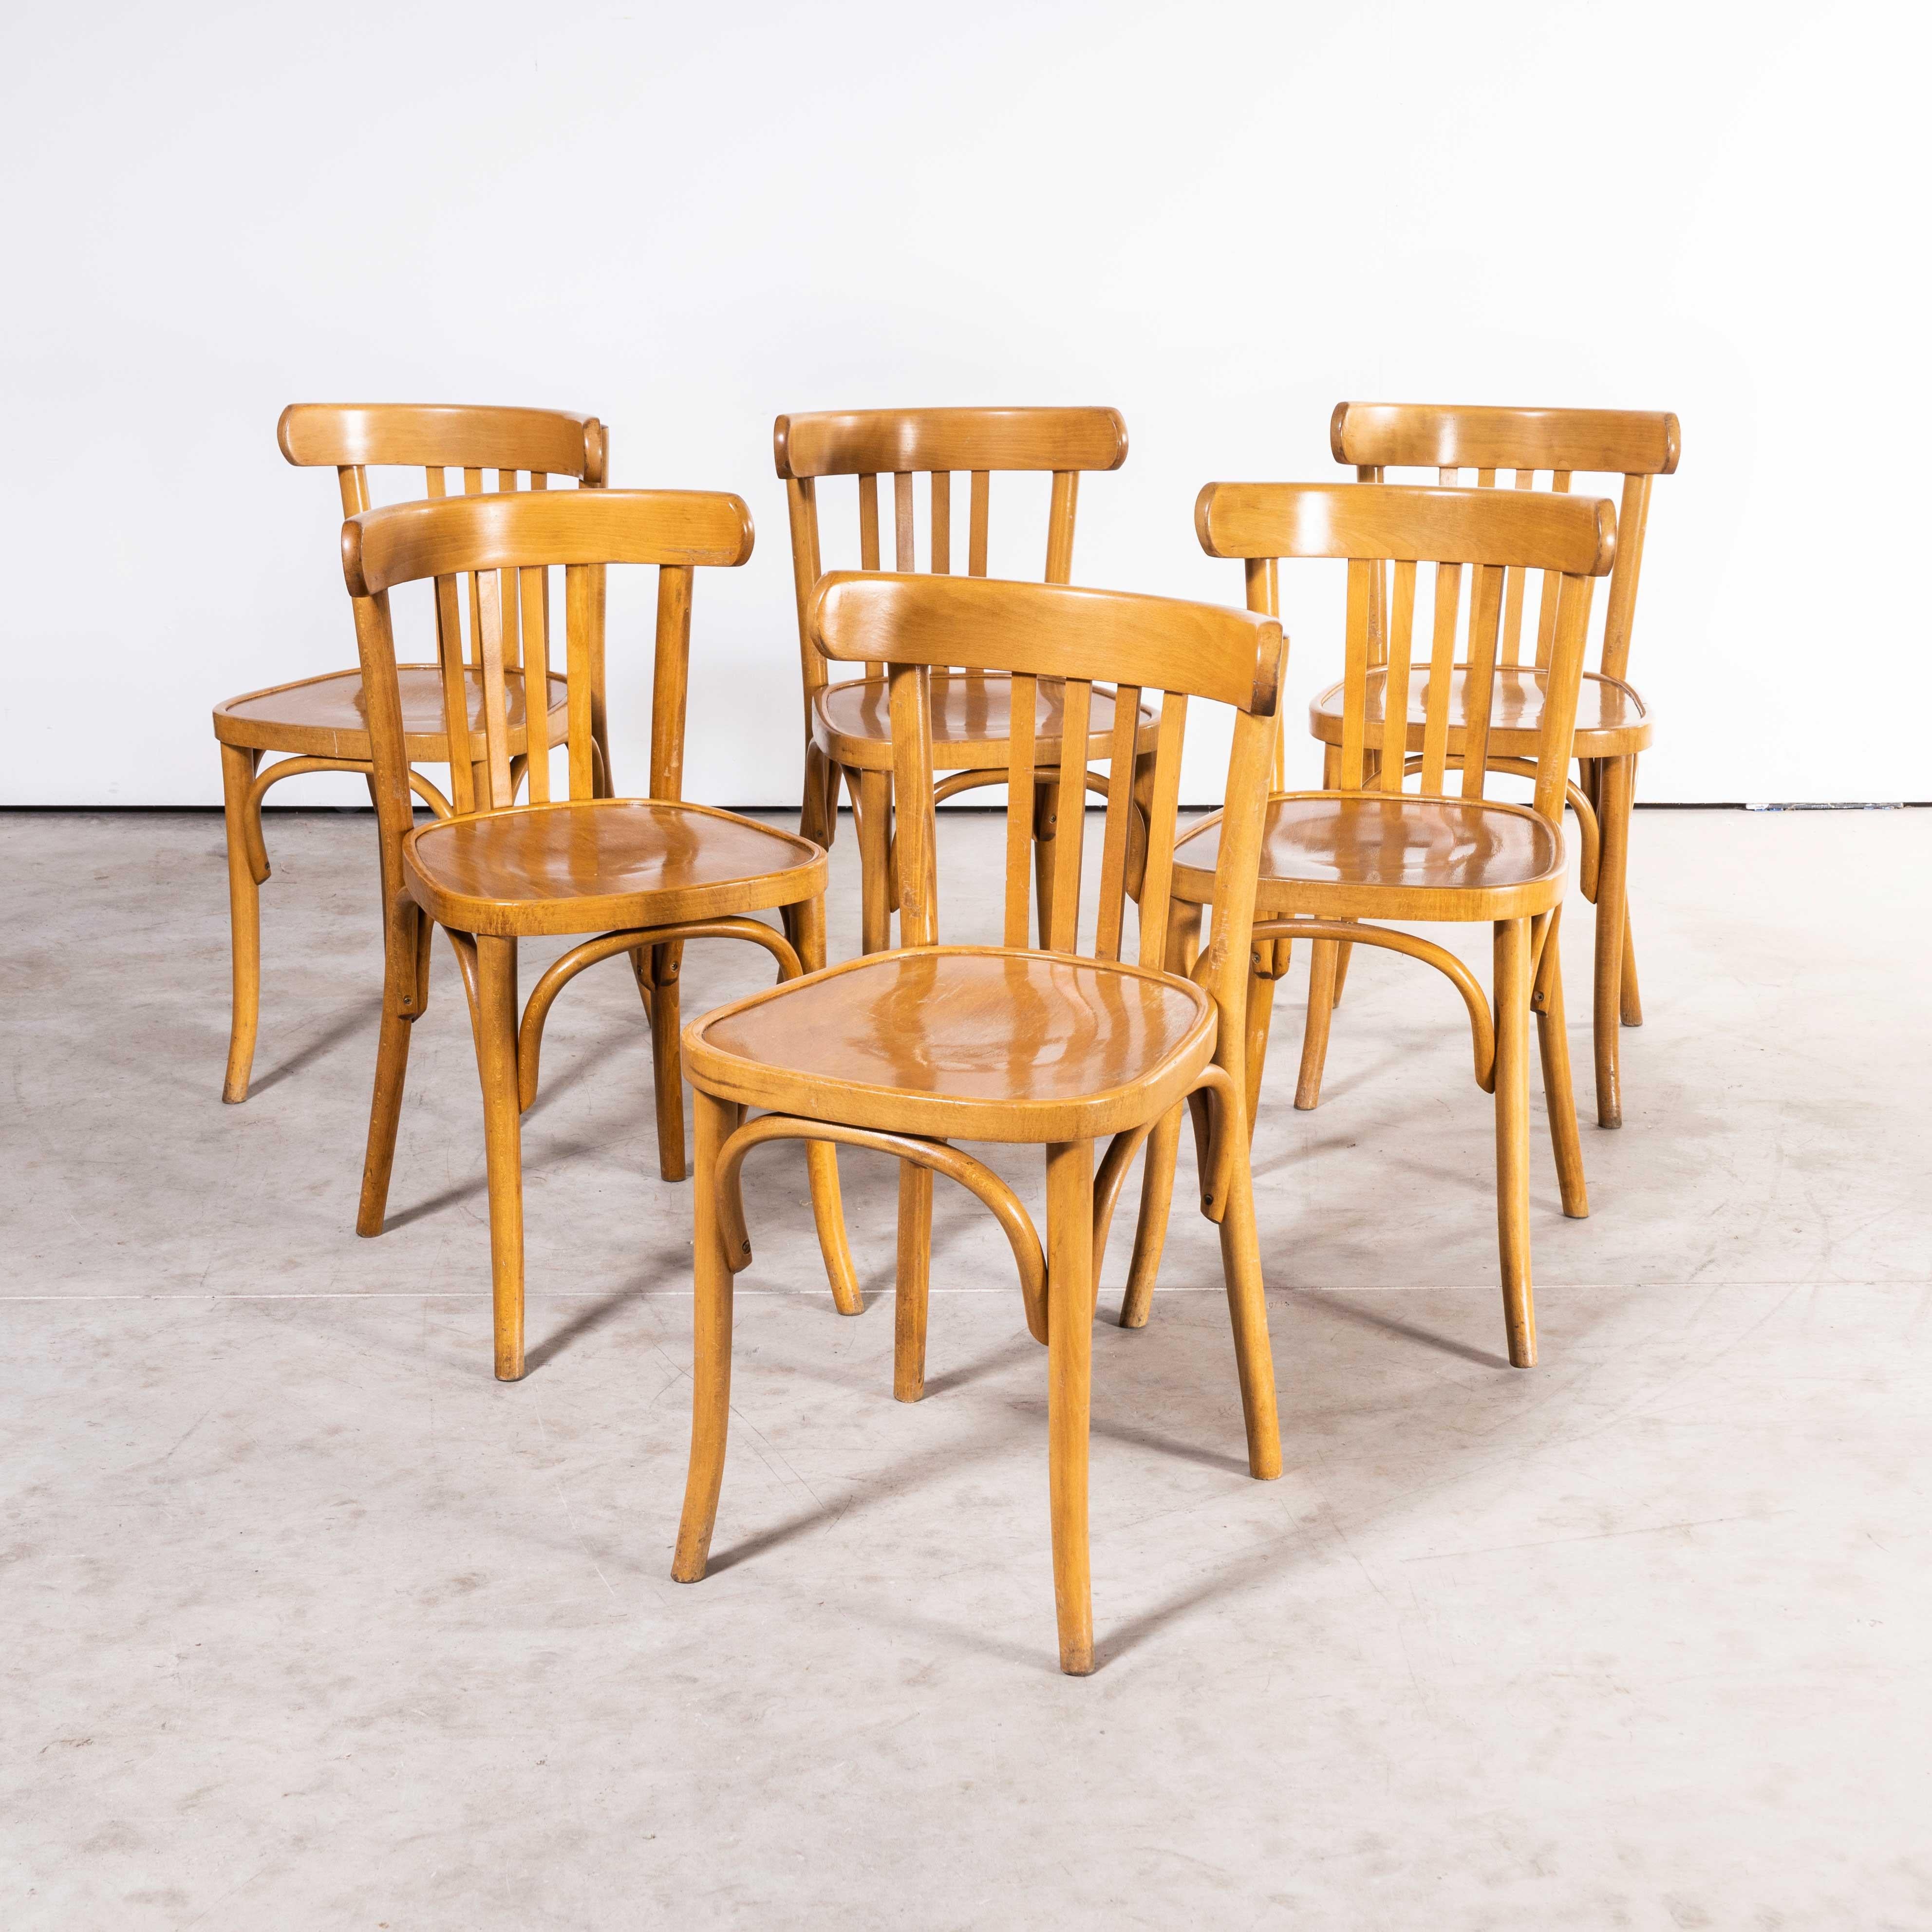 Chaises de salle à manger en bois de hêtre miel Bentwood des années 1970 - lot de six
Chaises de salle à manger en hêtre miel Bentwood des années 1970 - ensemble de six. Achetées en France, ces chaises sont issues de la production tardive d'une